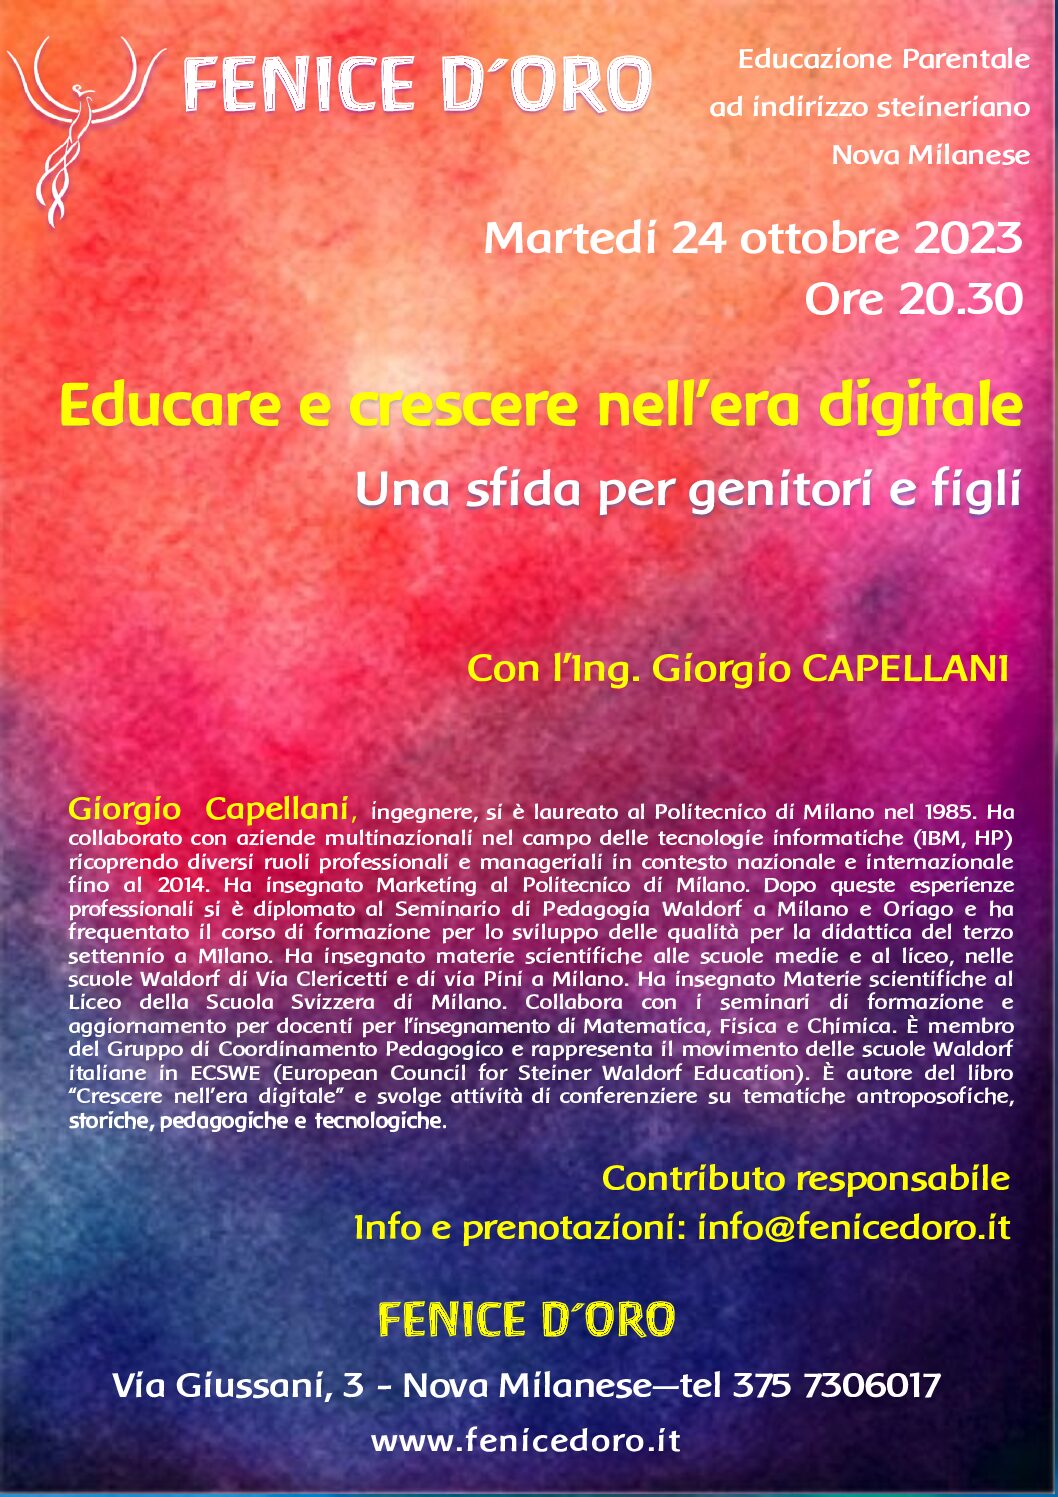 Conferenza “Educare e crescere nell’era digitale” a cura di Giorgio Capellani